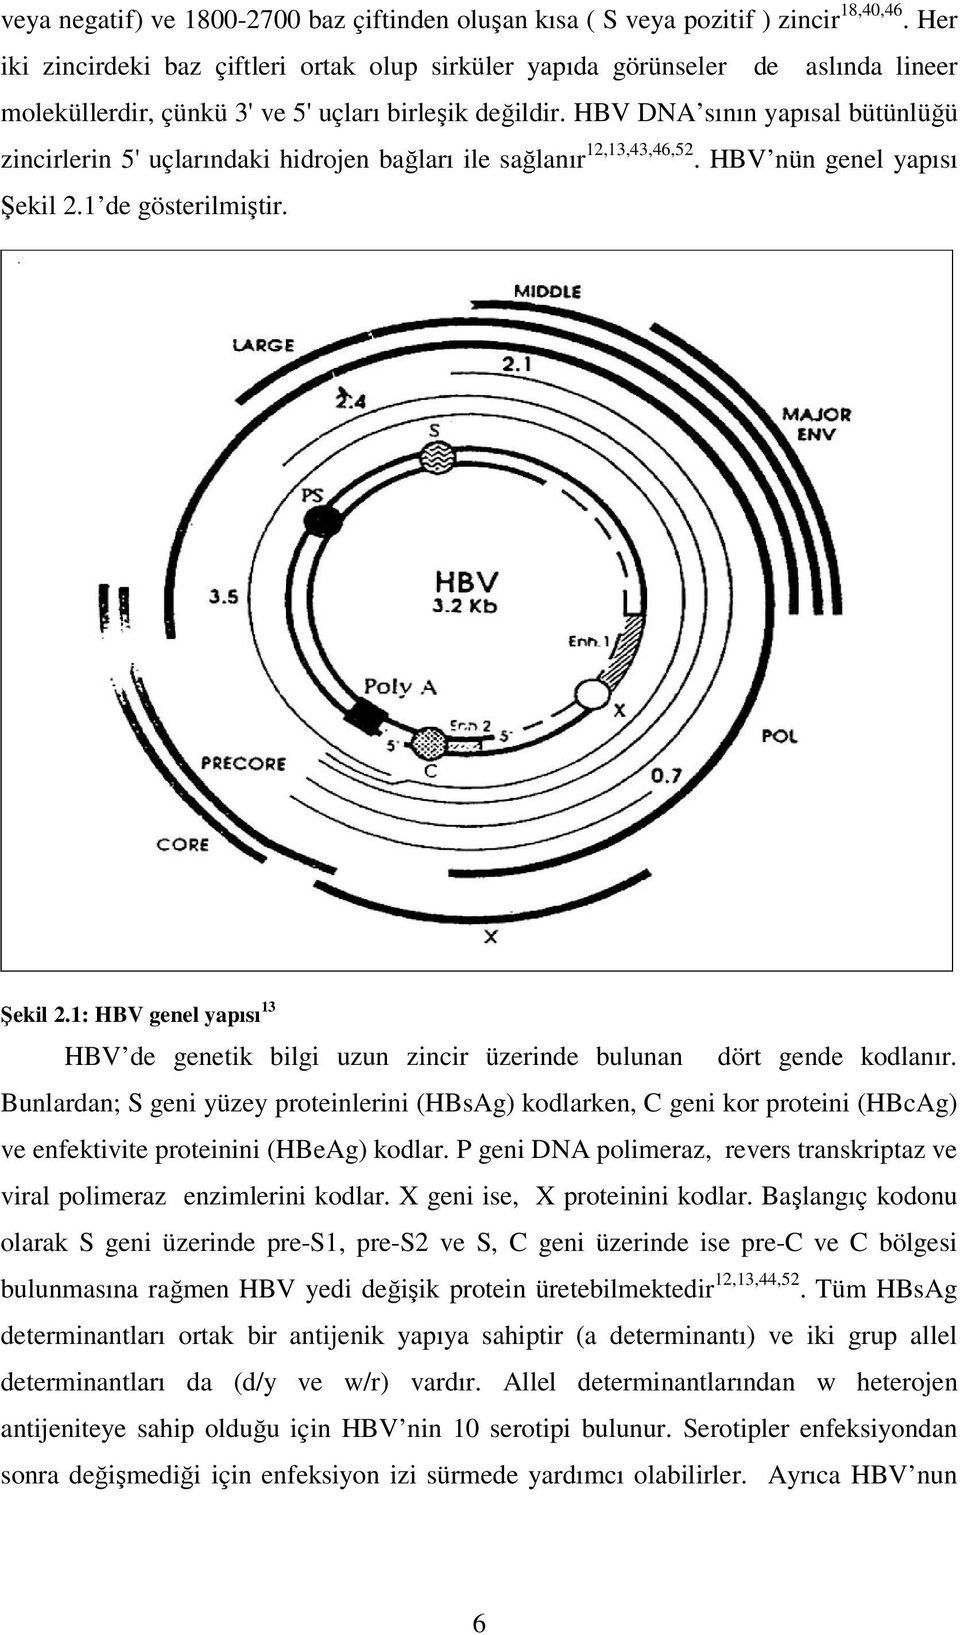 HBV DNA sının yapısal bütünlüğü zincirlerin 5' uçlarındaki hidrojen bağları ile sağlanır 12,13,43,46,52. HBV nün genel yapısı Şekil 2.